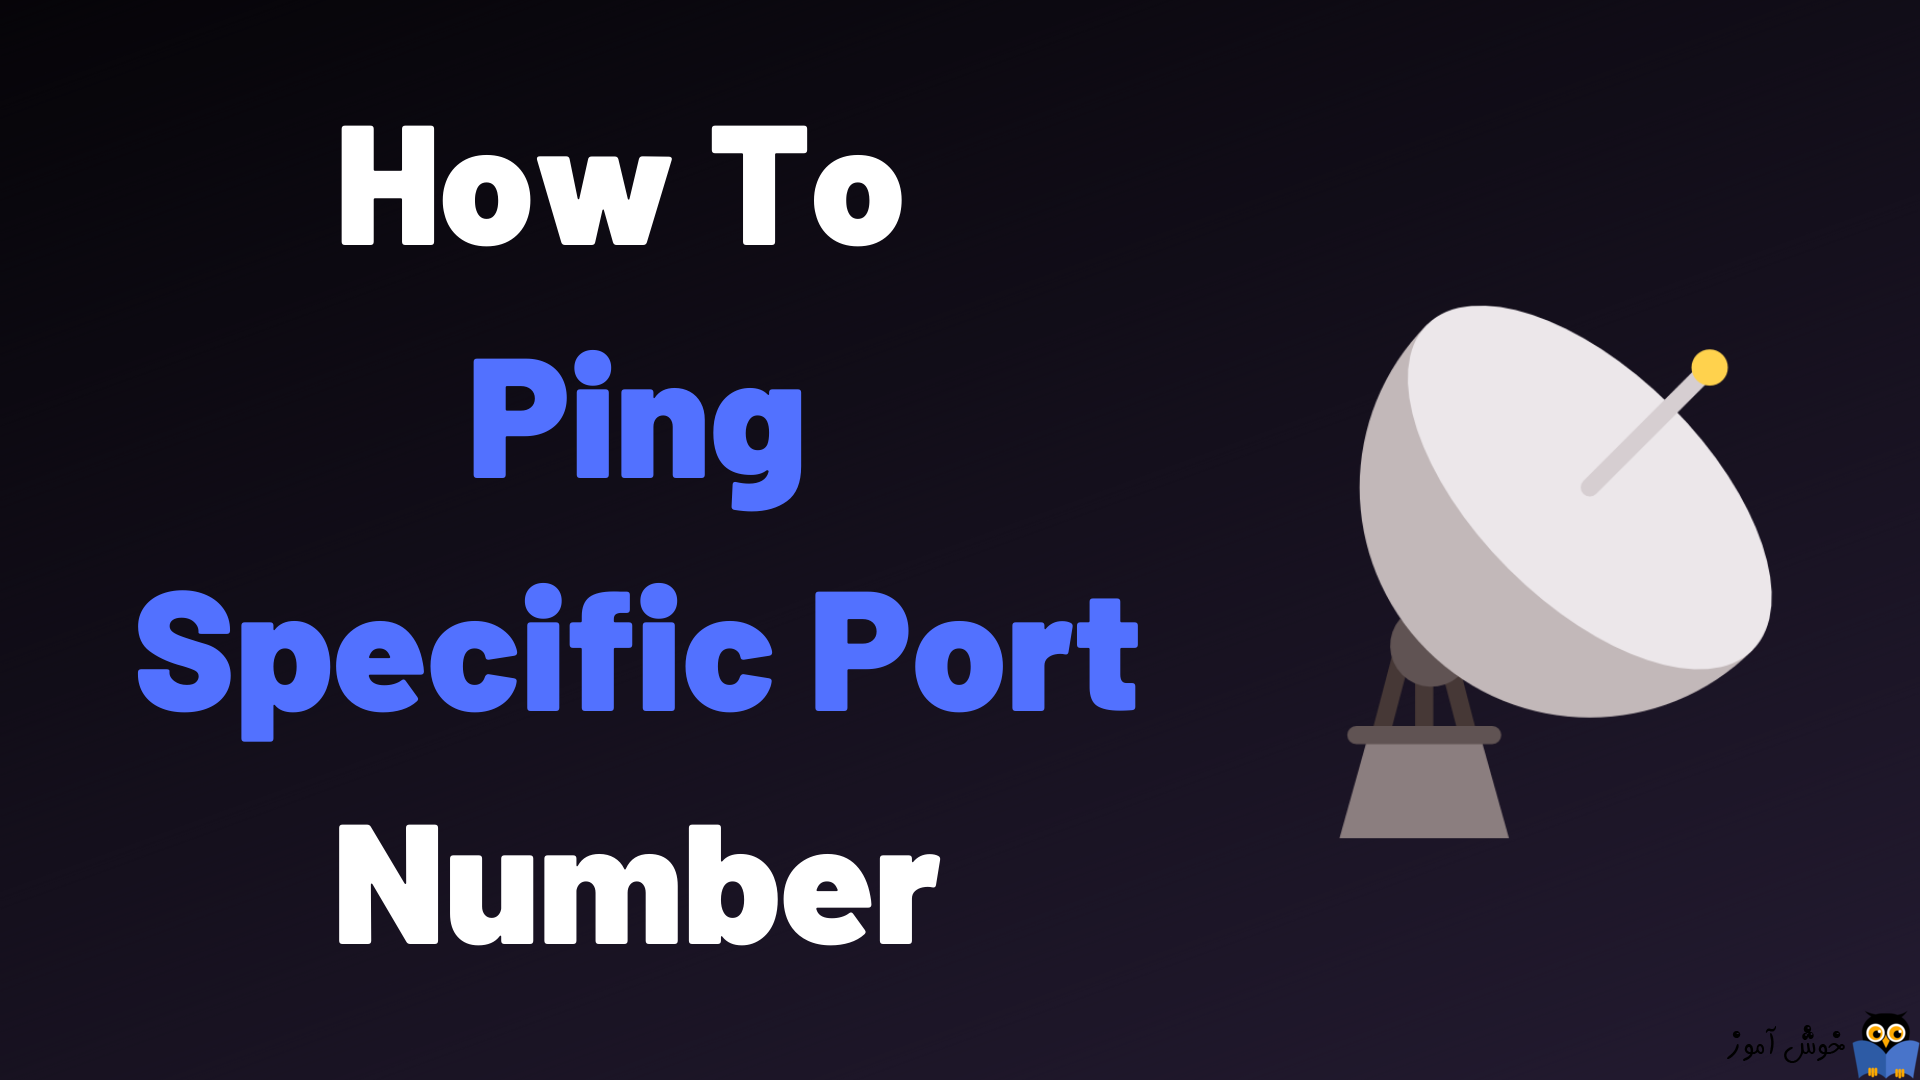 نحوه ping کردن یک شماره پورت خاص در ویندوز و لینوکس